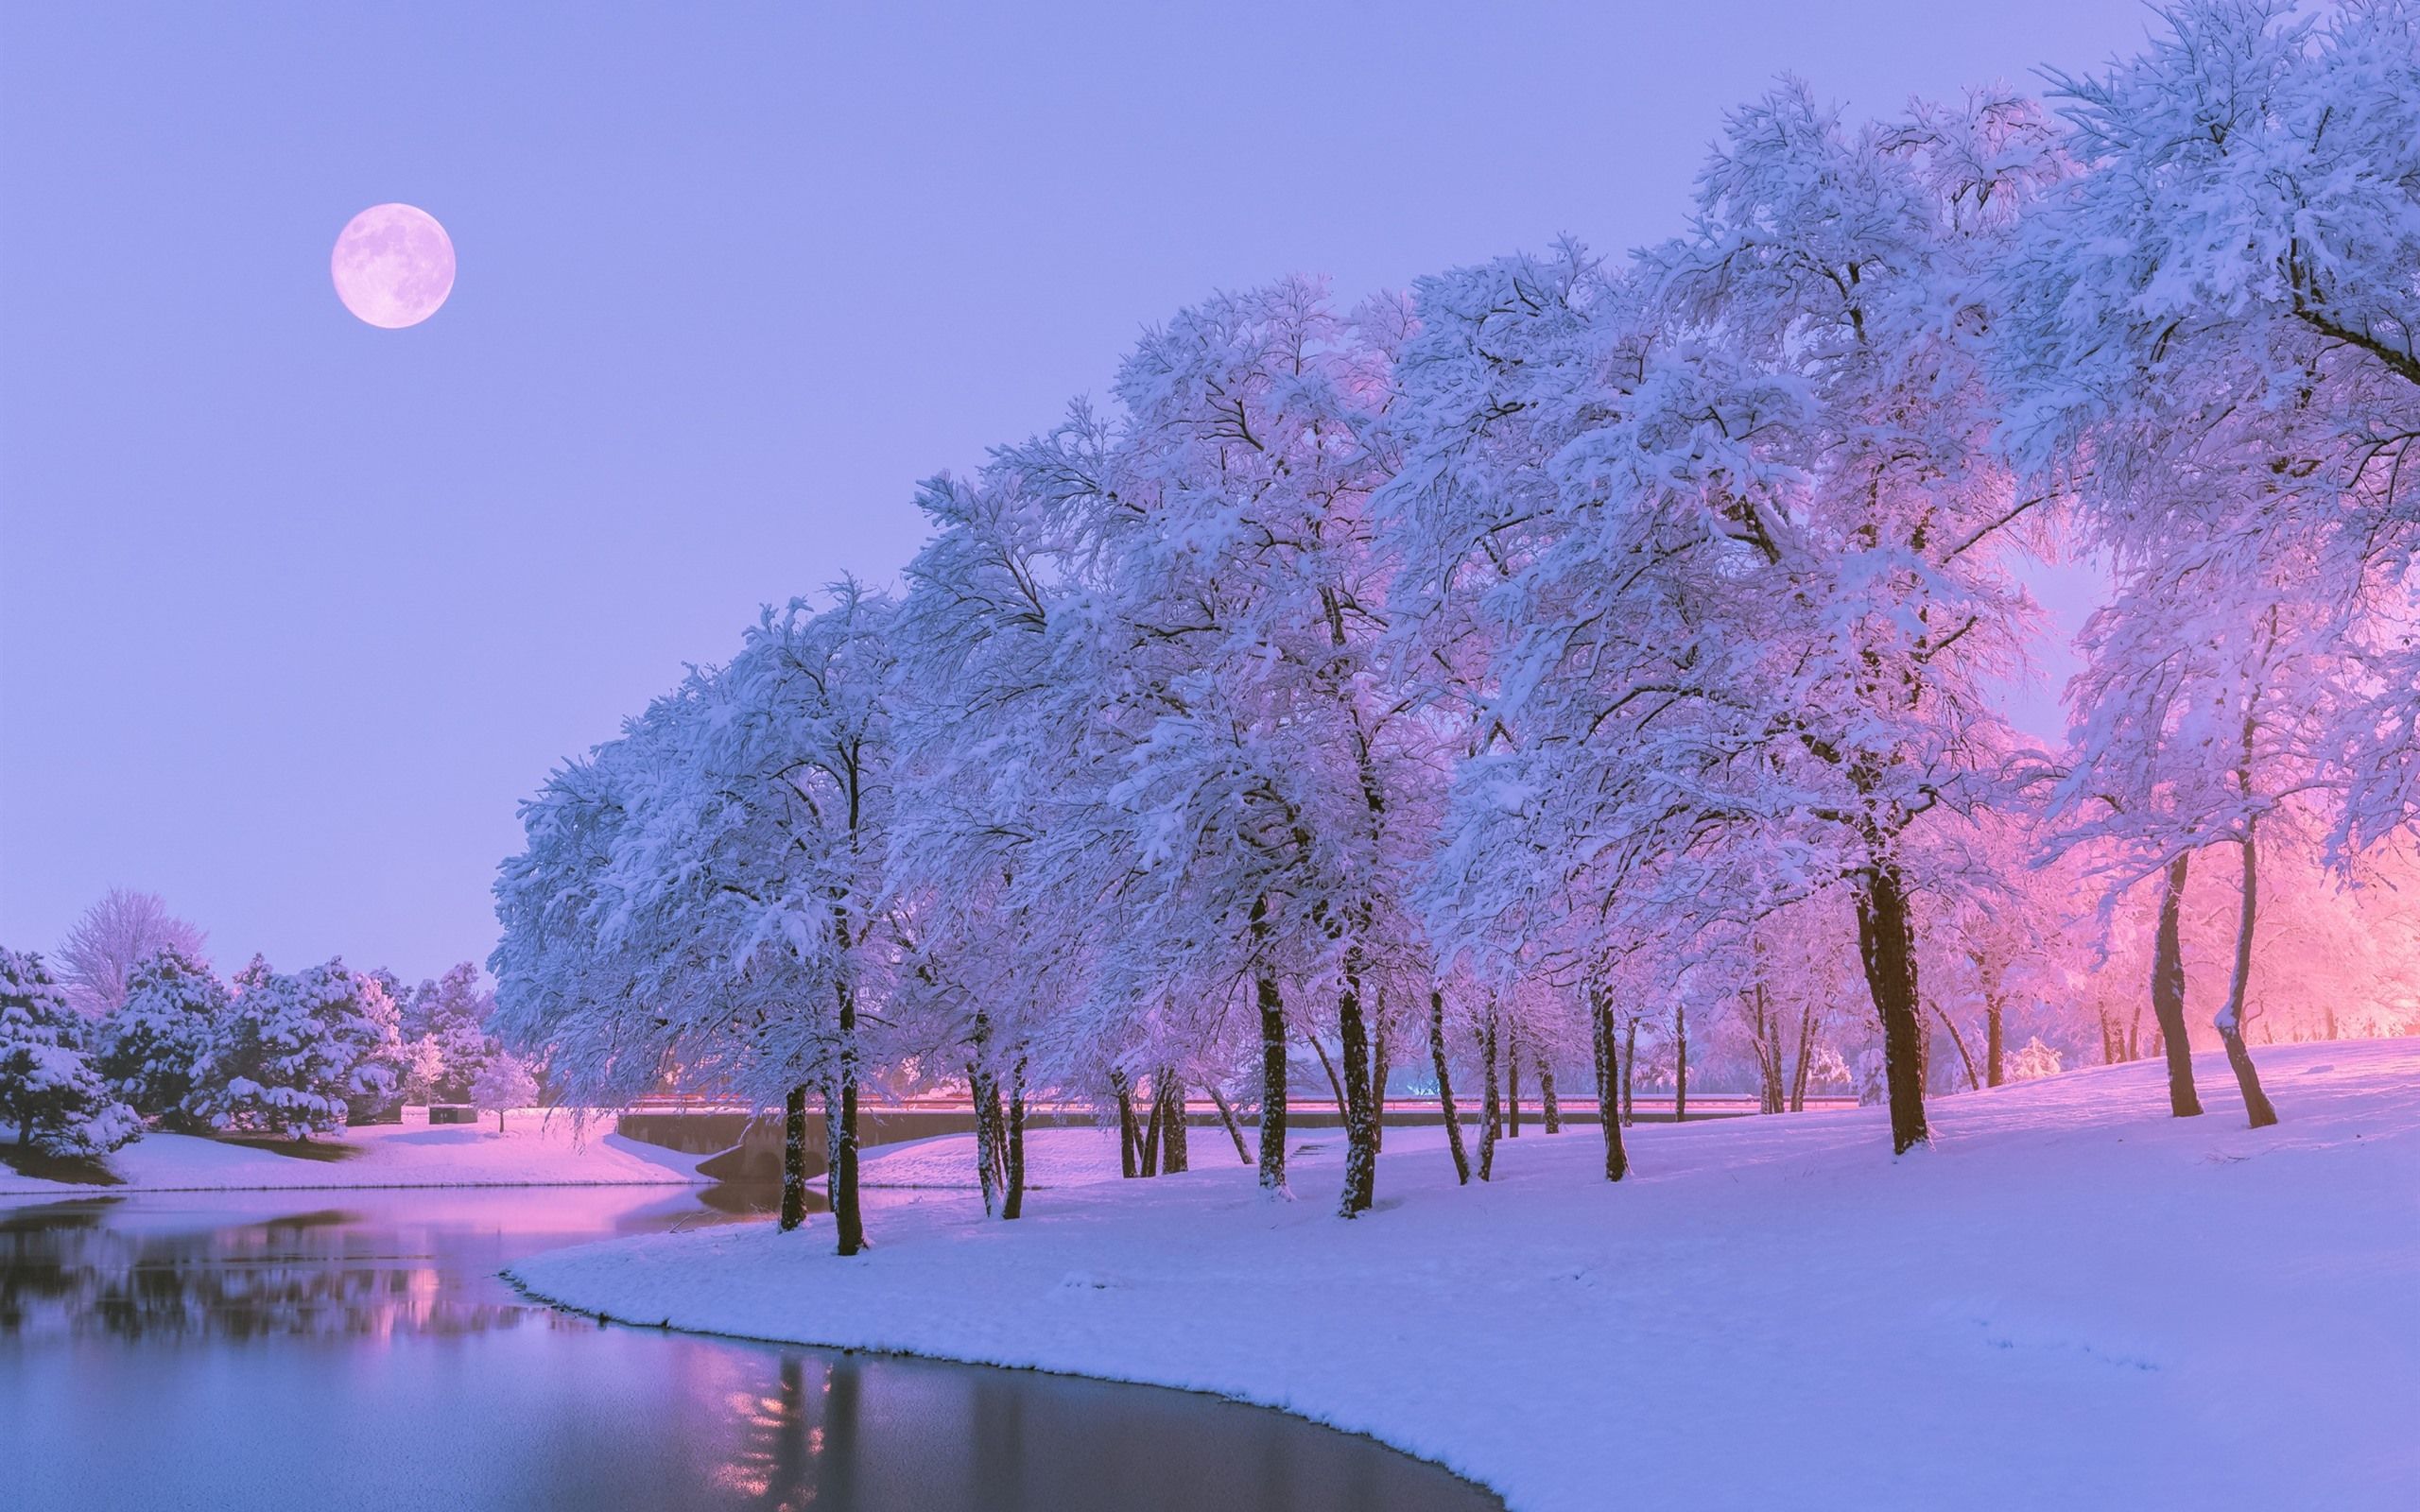  Schnee Hintergrundbild 2560x1600. Schöner Winter, Schnee, Bäume, Fluss, Mond, Dämmerung 2560x1600 HD Hintergrundbilder, HD, Bild